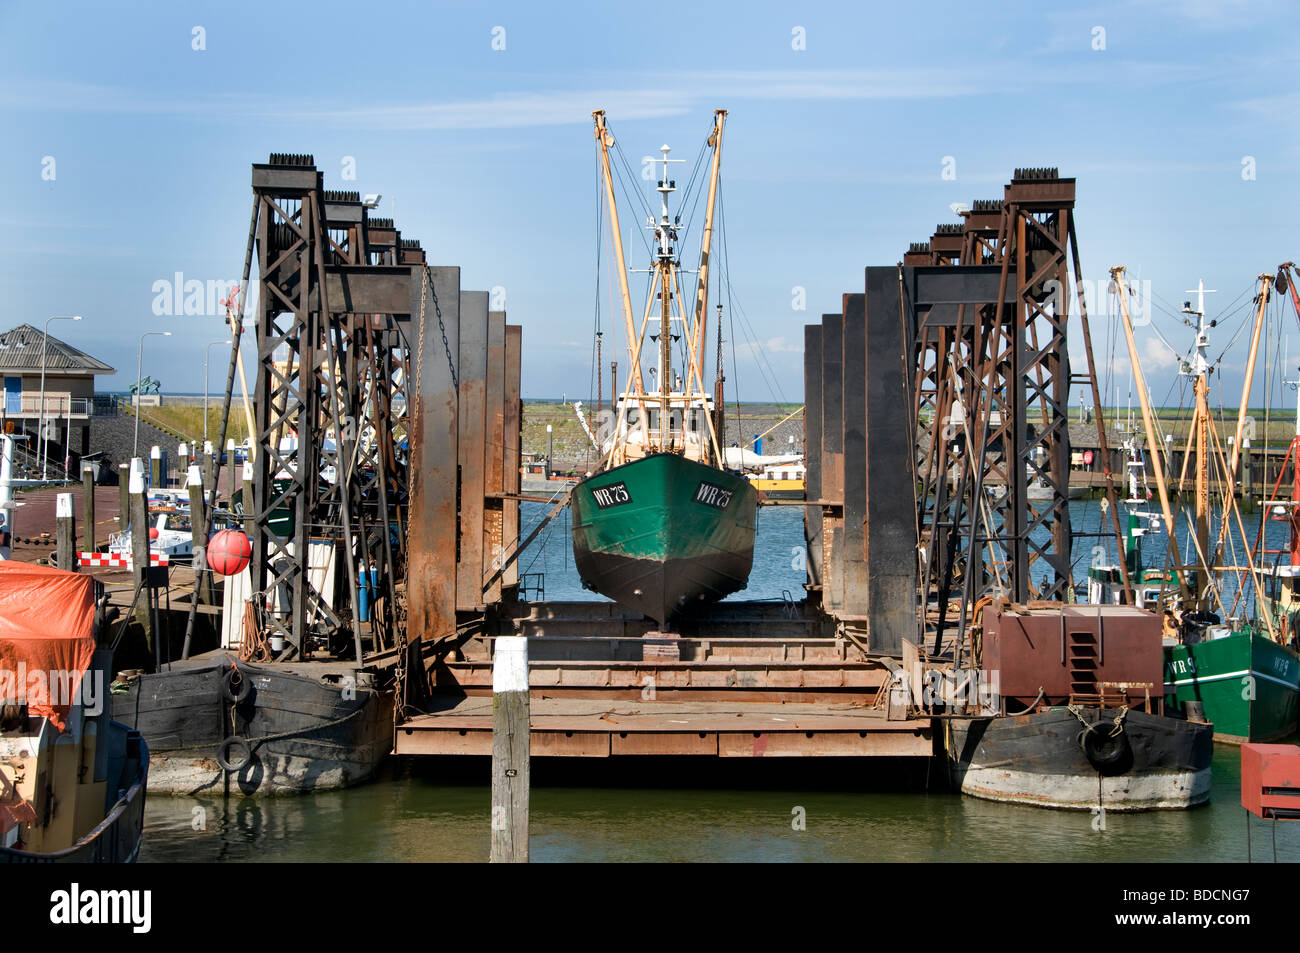 Oudeschild Texel Niederlande Fischtrawler schwimmenden Trockendock Werft Hafen Hafen Wadden Sea Wattenmeer Wad Stockfoto